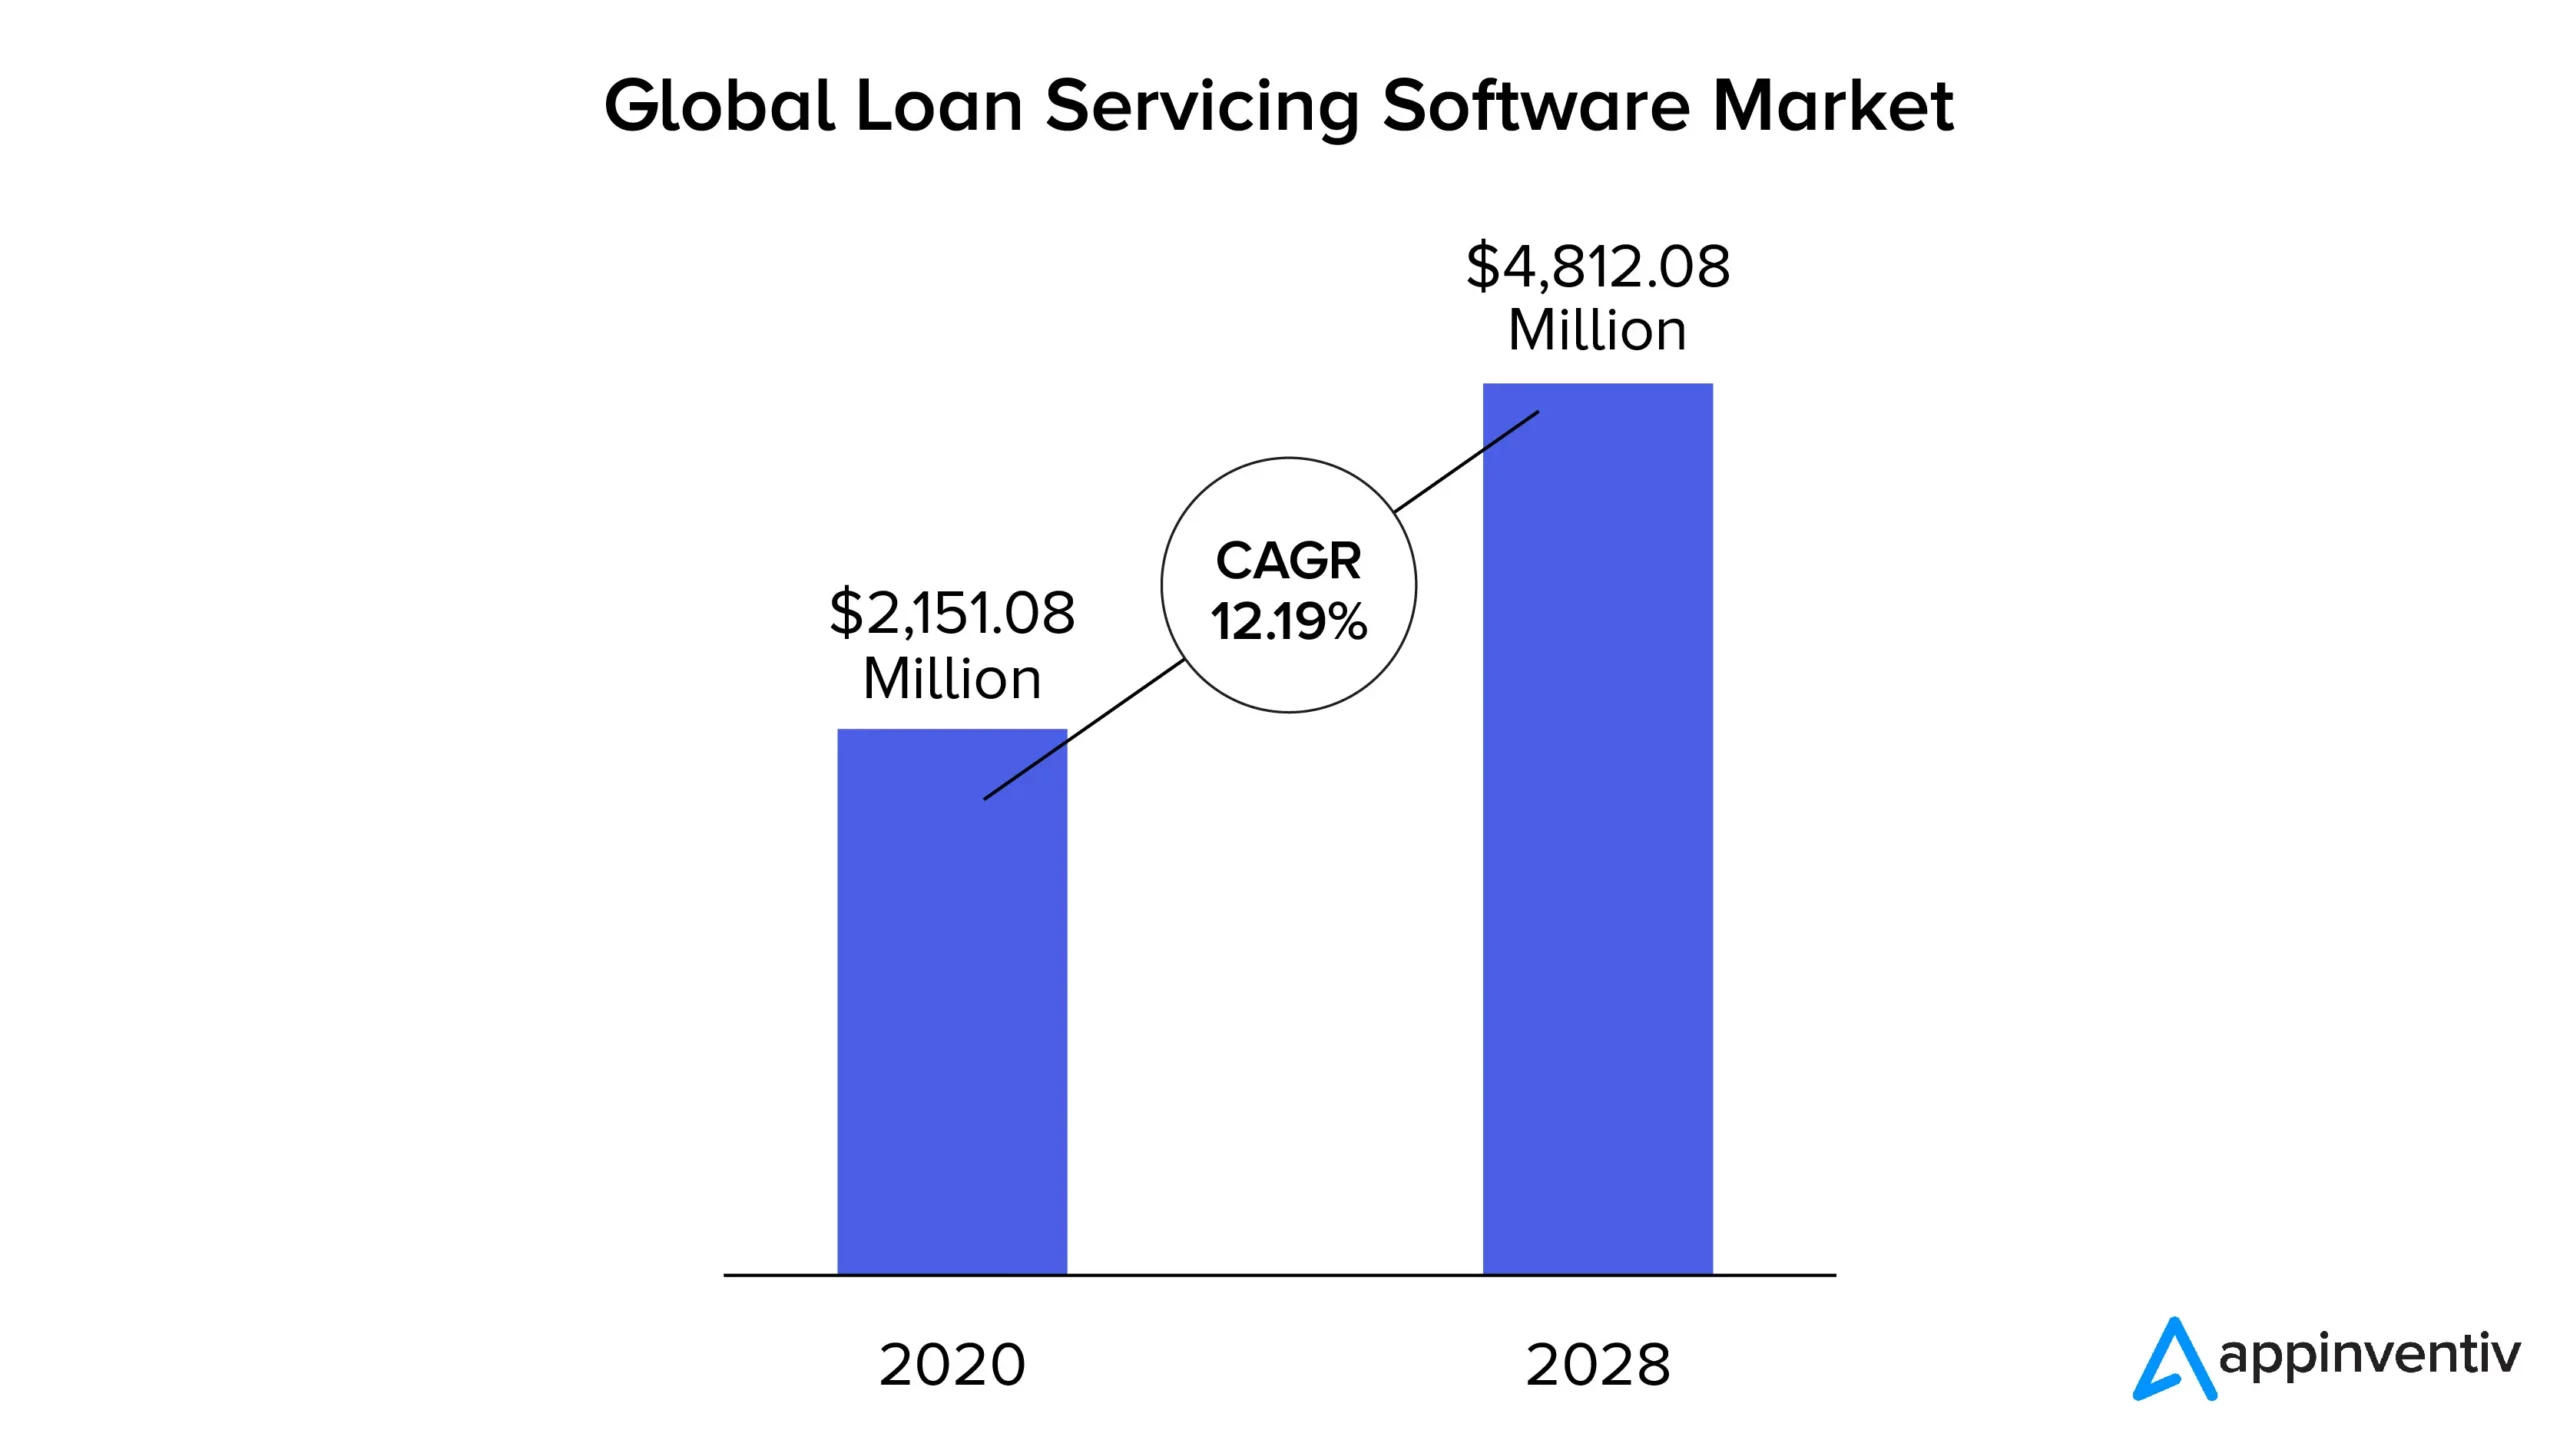 Piața globală de software pentru servicii de împrumut